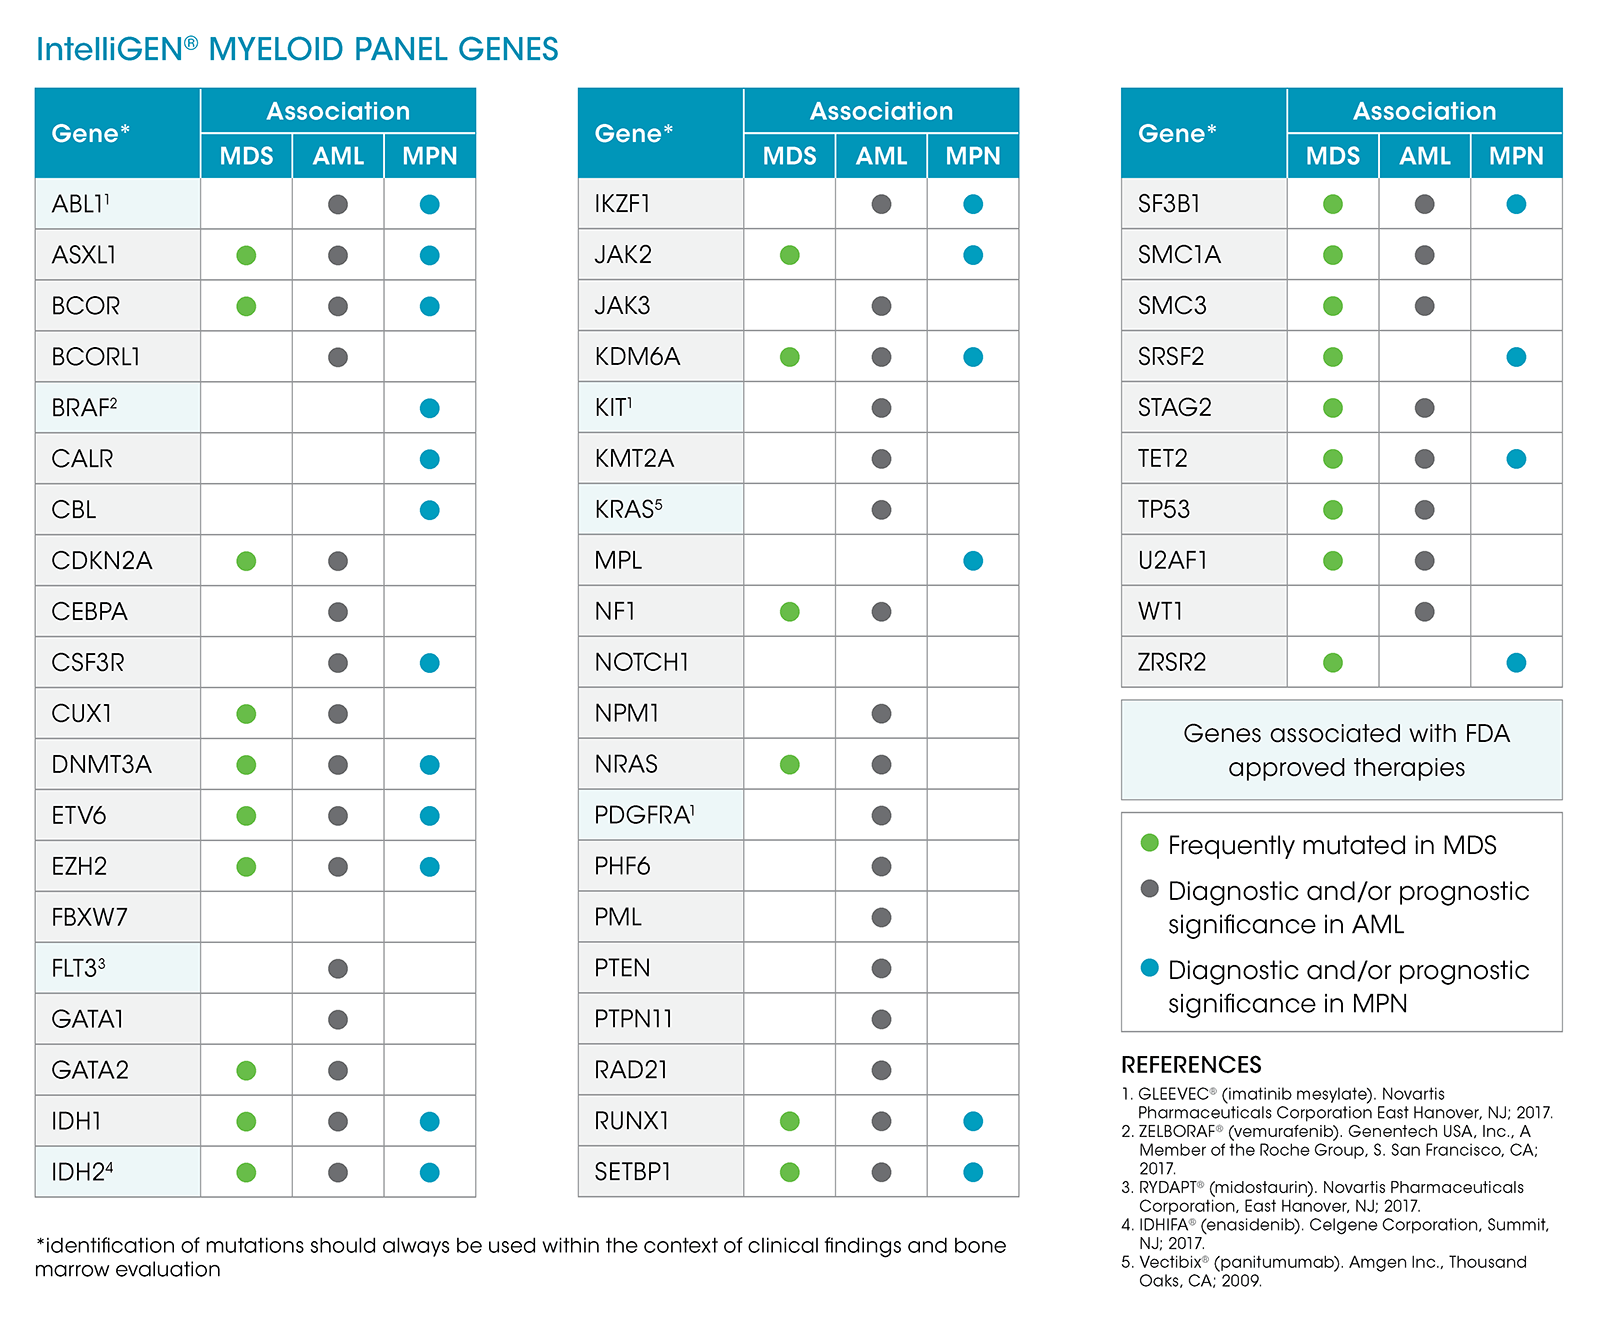 IntelliGEN® Myeloid Panel Genes chart